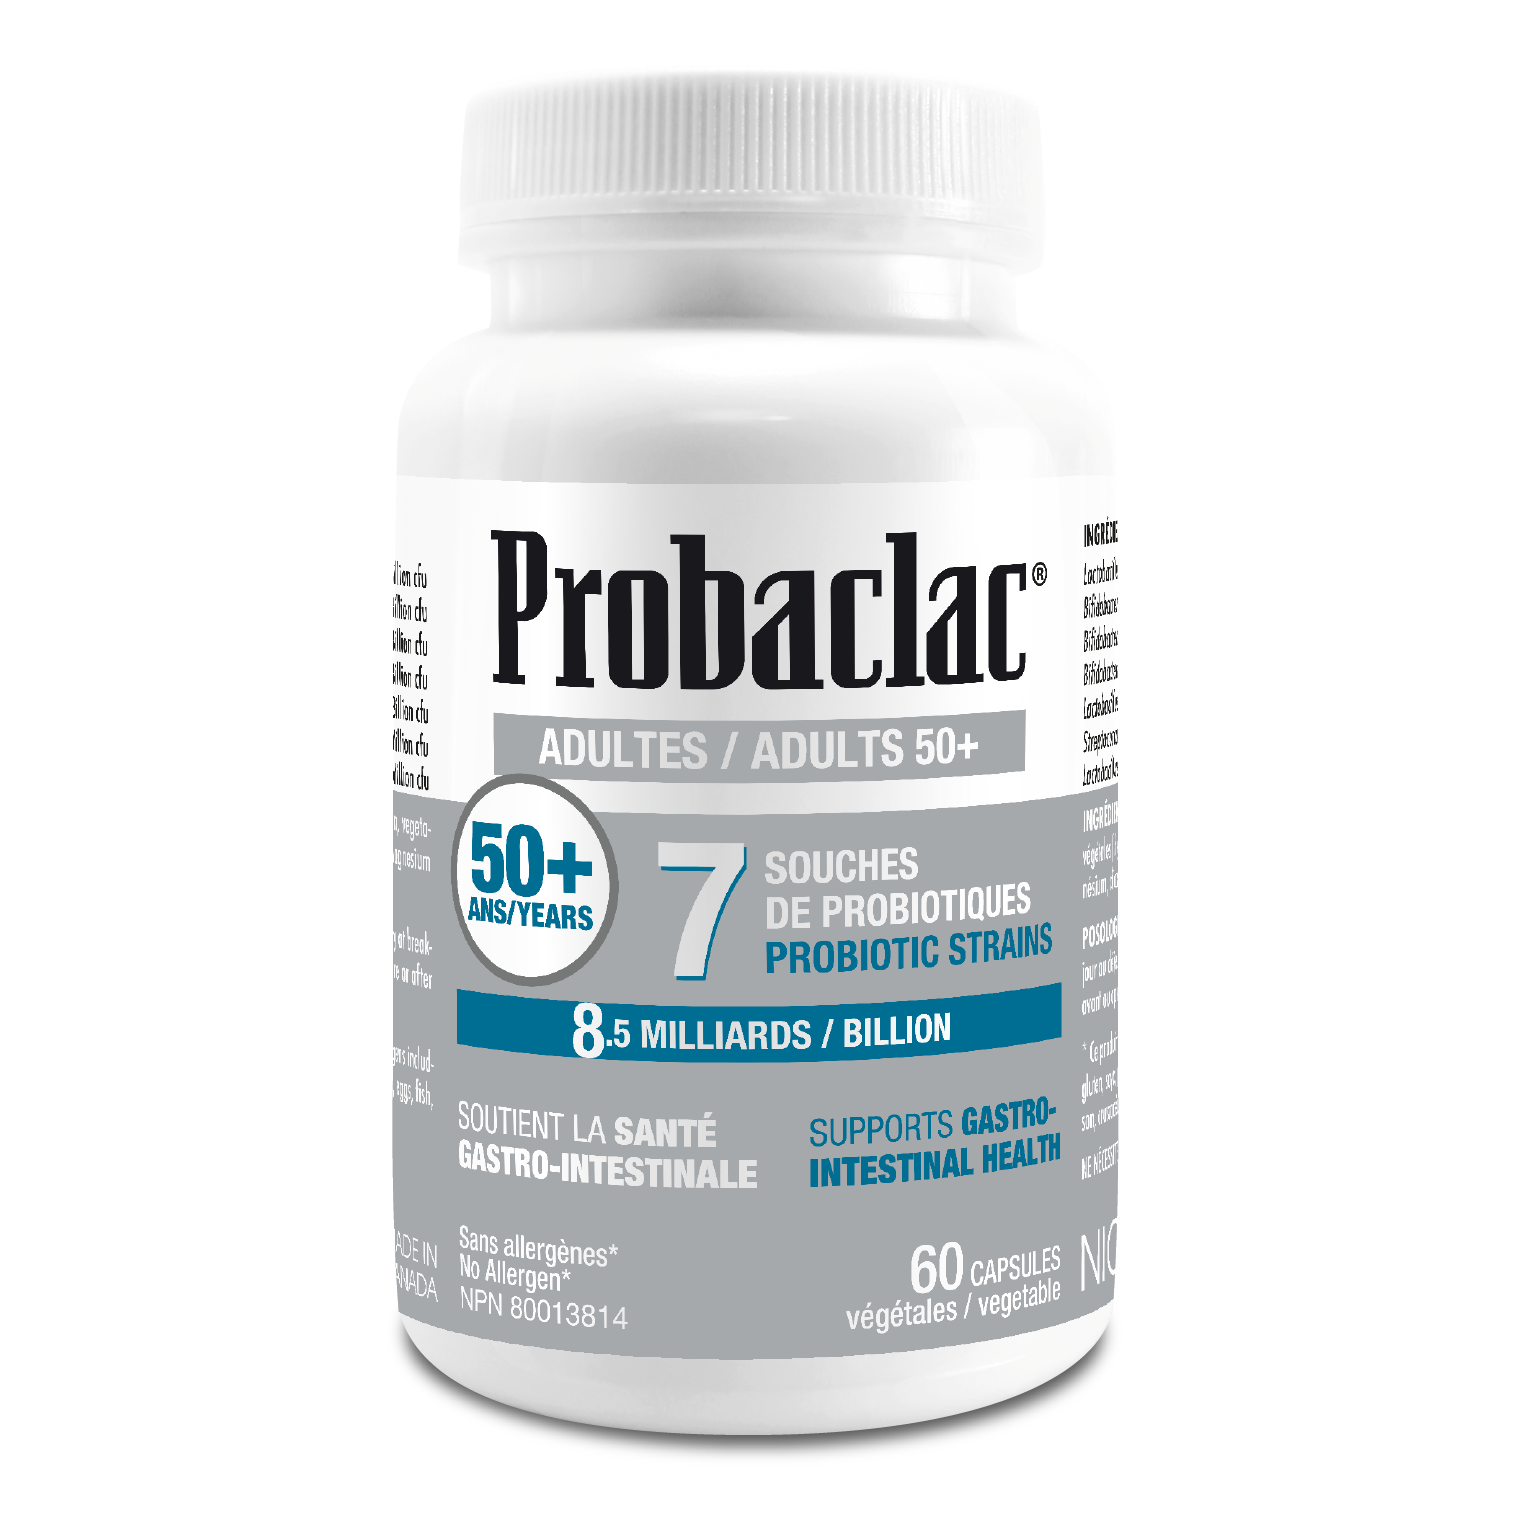 Probiotiques 50 ans et + Probaclac